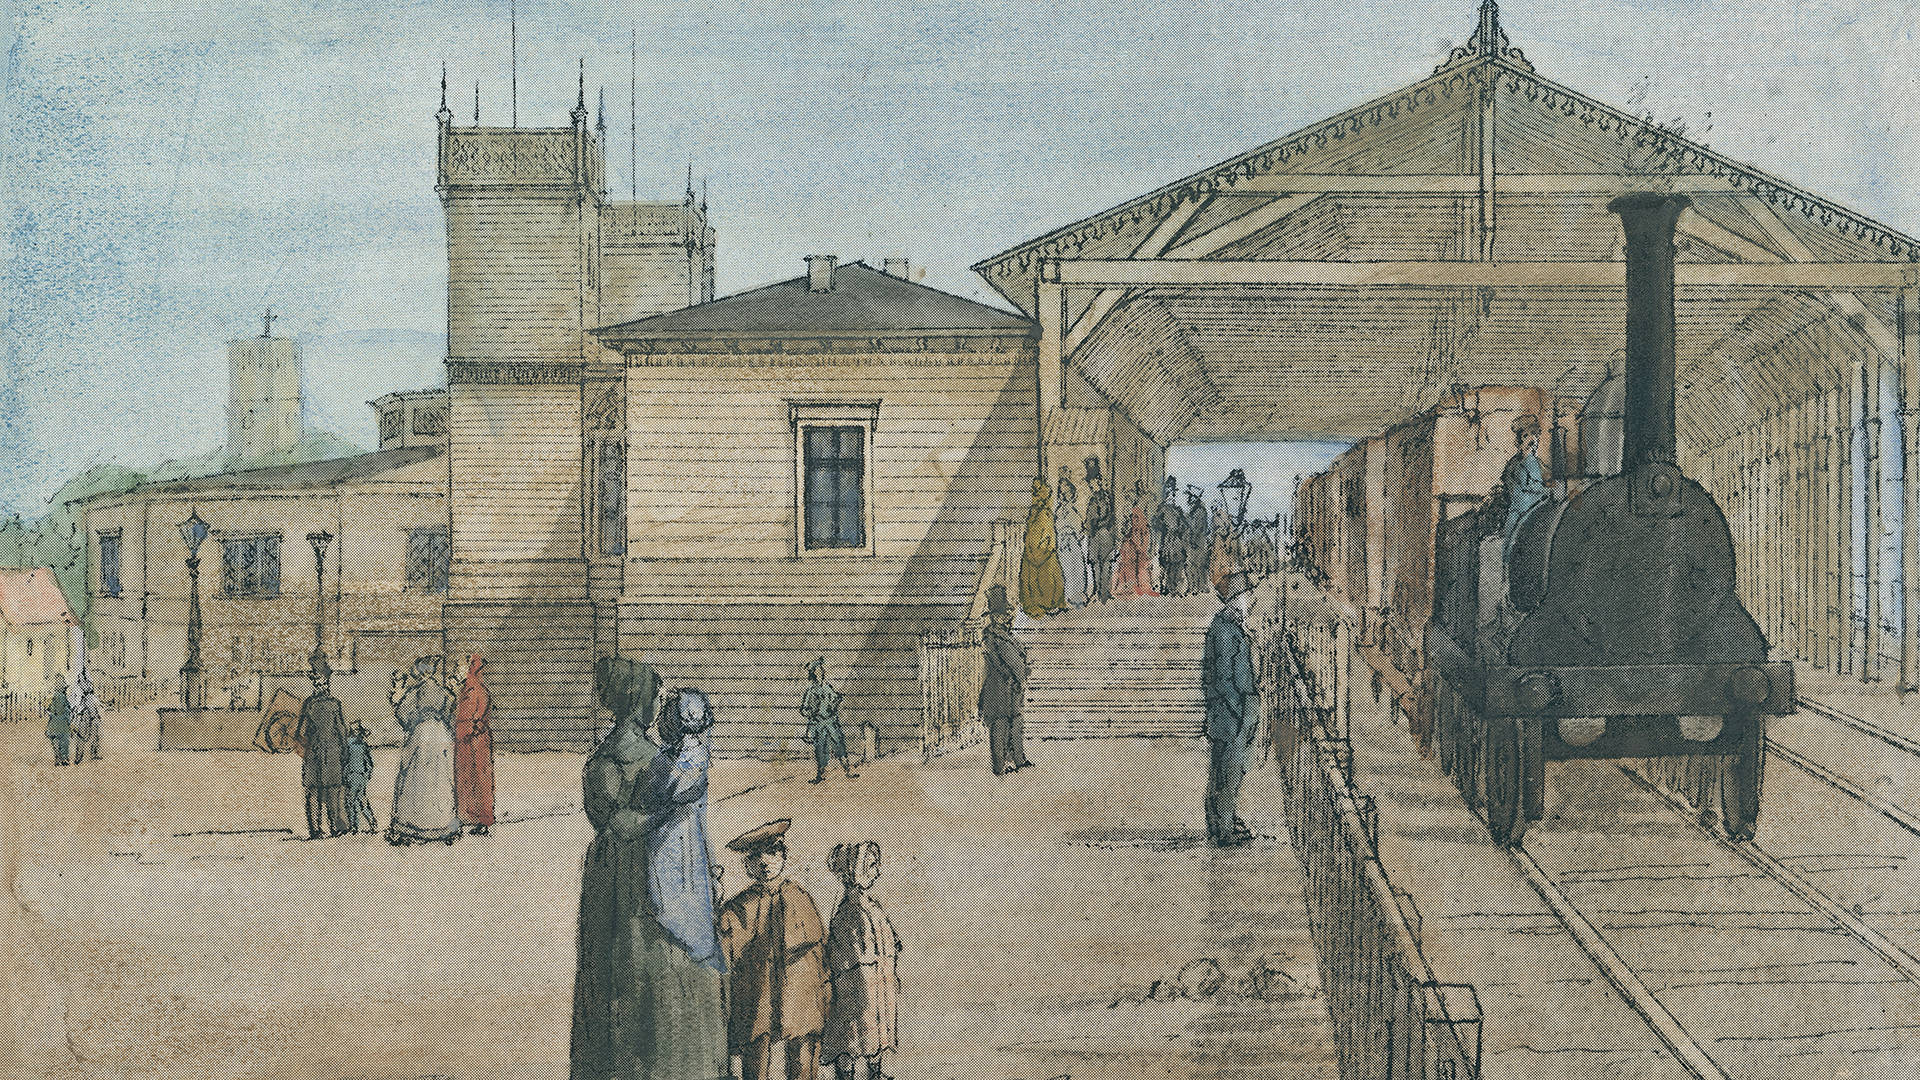 Københavns første hovedbanegård med perron (1849)